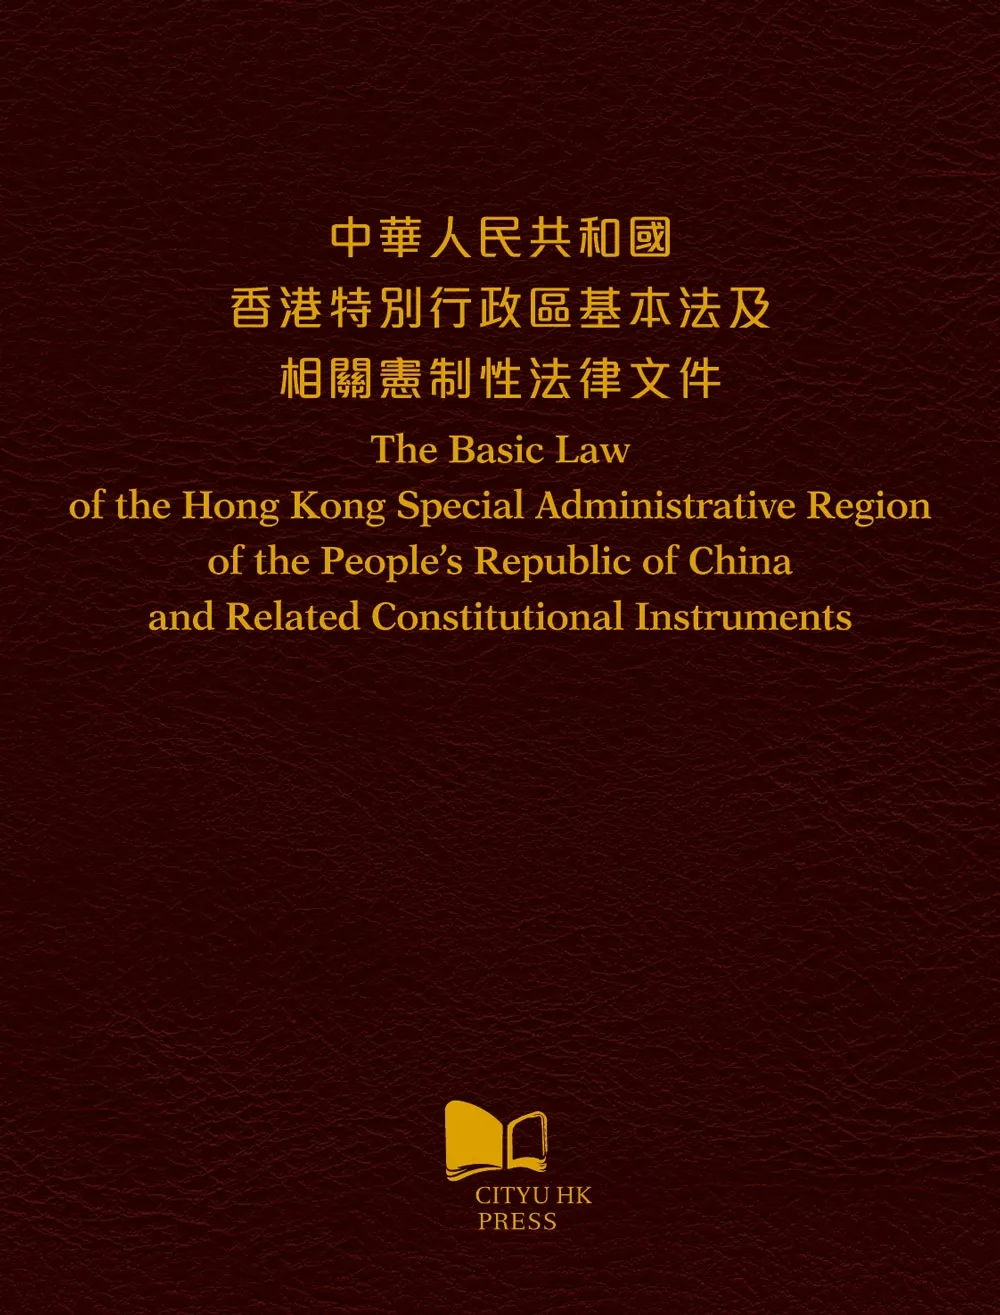 中華人民共和國 香港特別行政區基本法及相關憲制性法律文件